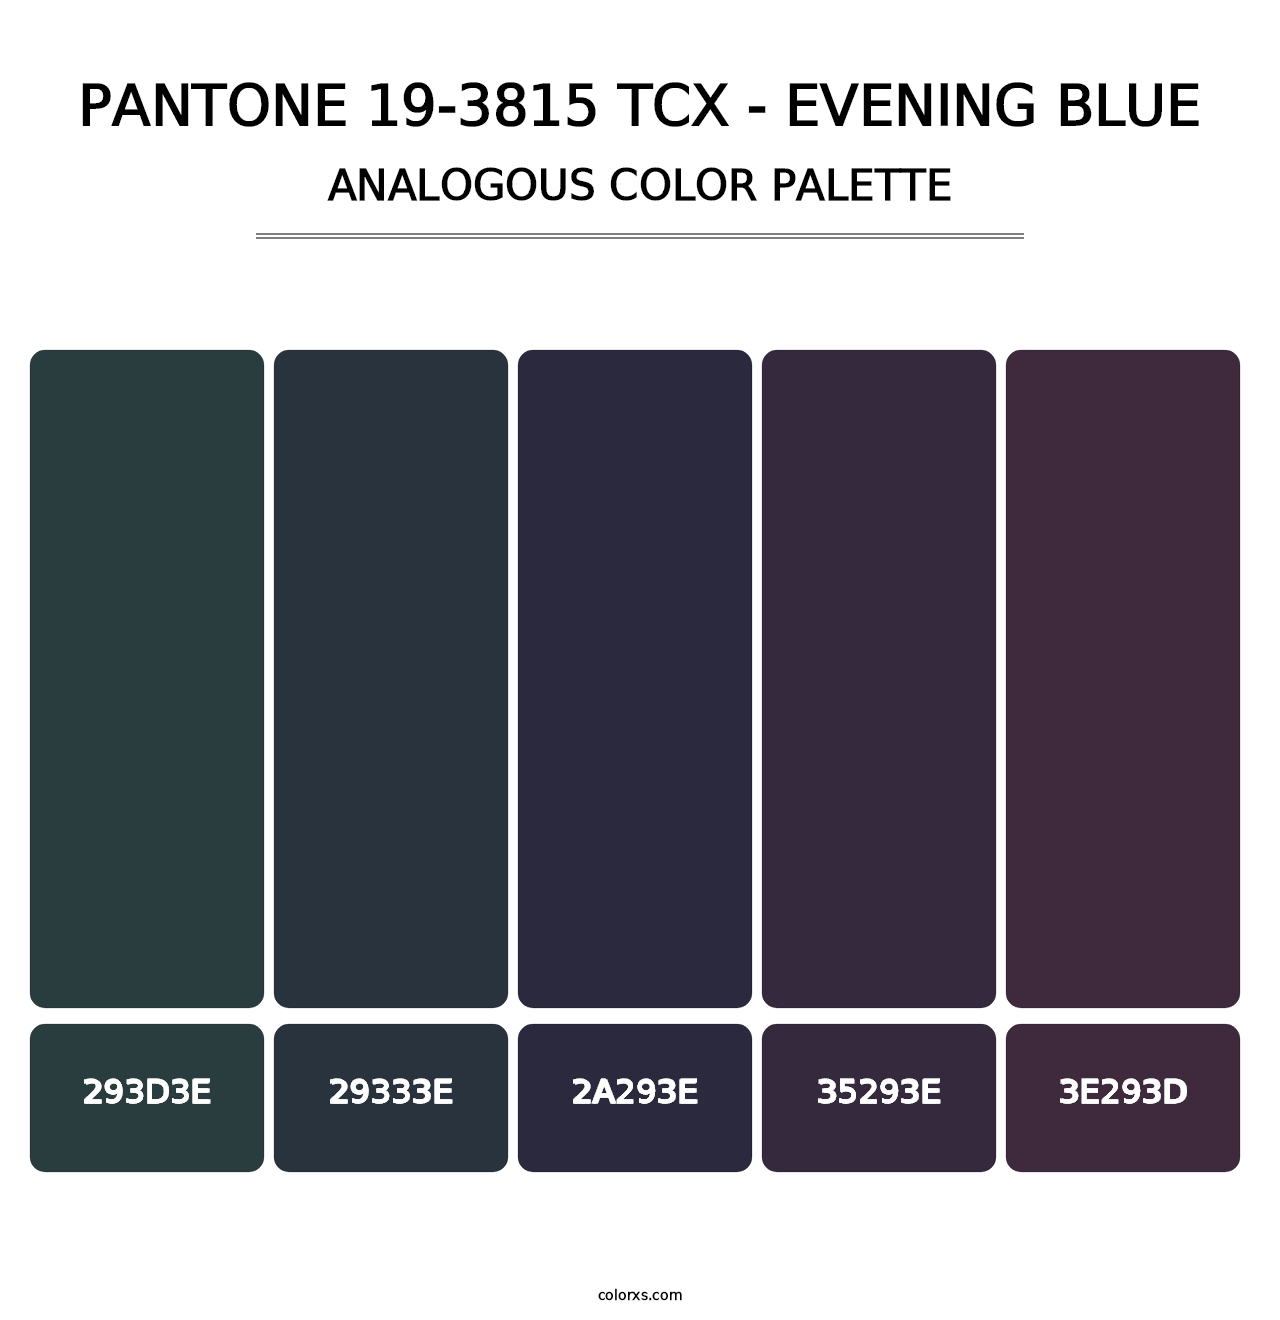 PANTONE 19-3815 TCX - Evening Blue - Analogous Color Palette